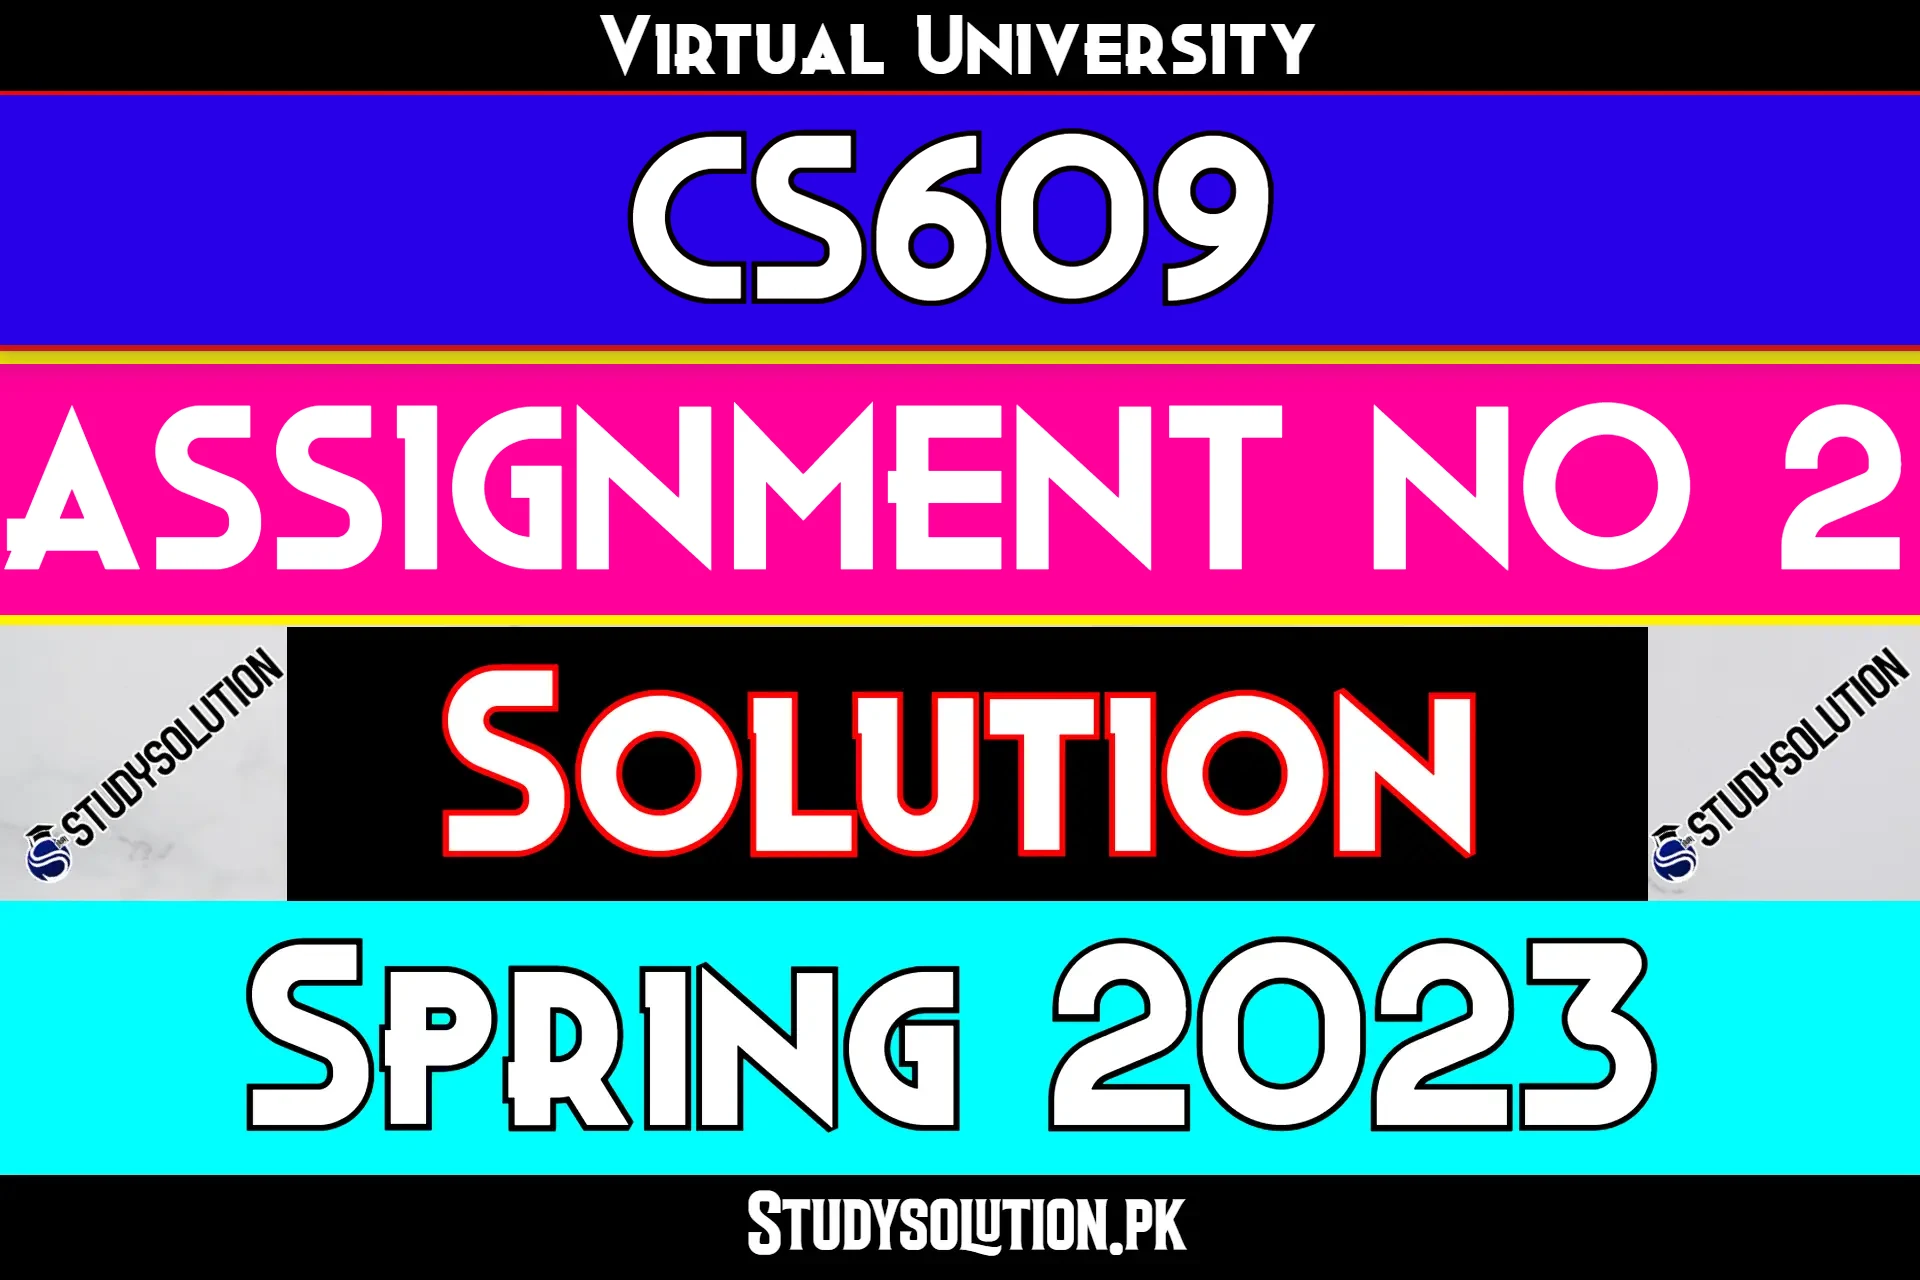 CS609 Assignment No 2 Solution Spring 2023